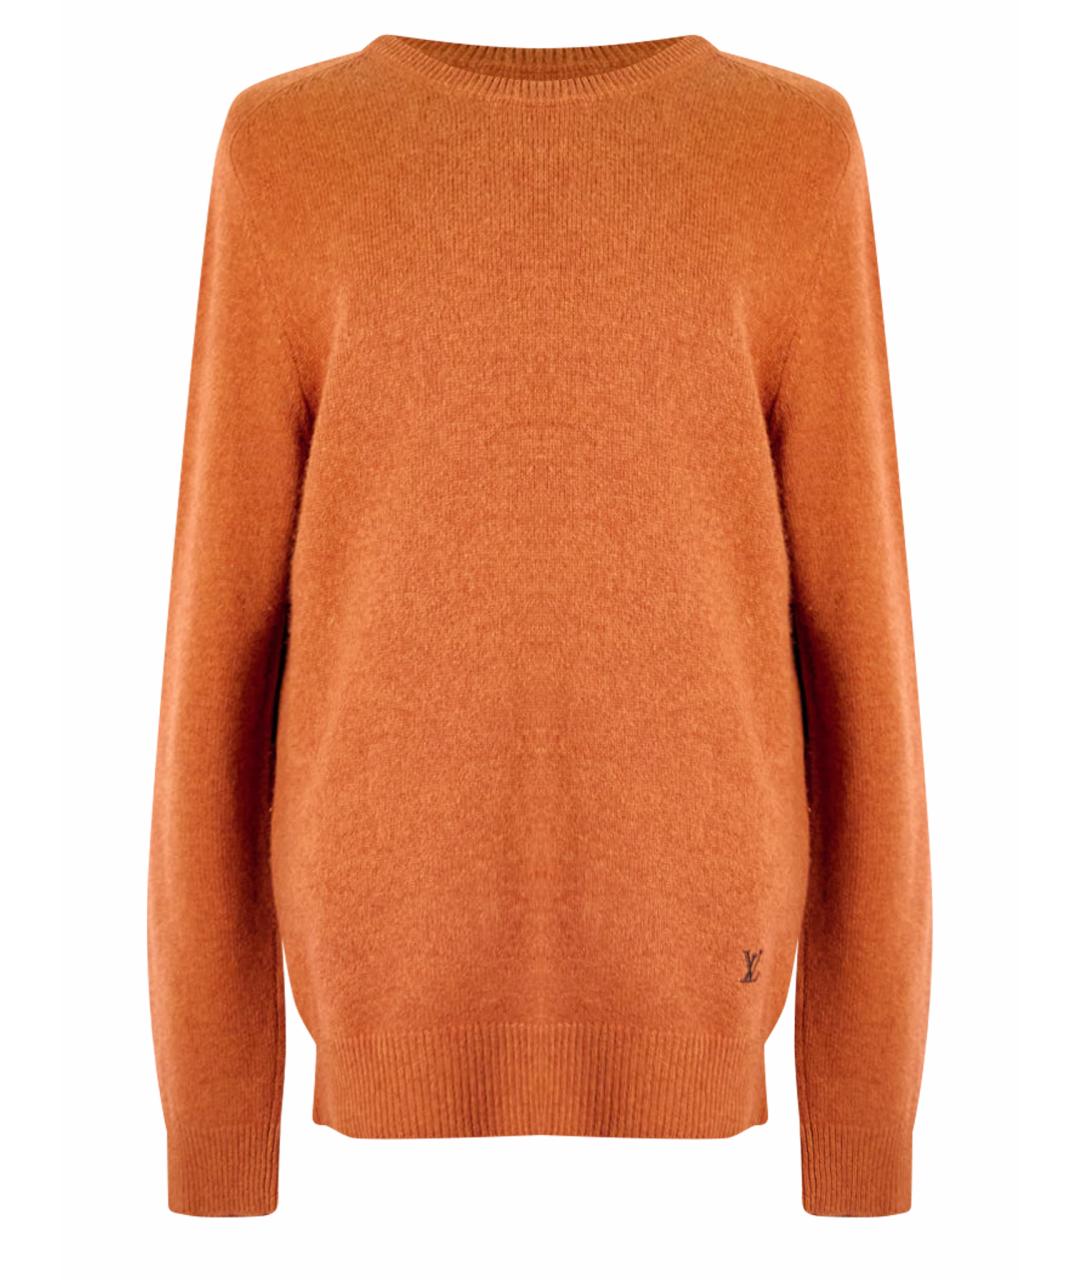 LOUIS VUITTON Оранжевый кашемировый джемпер / свитер, фото 1